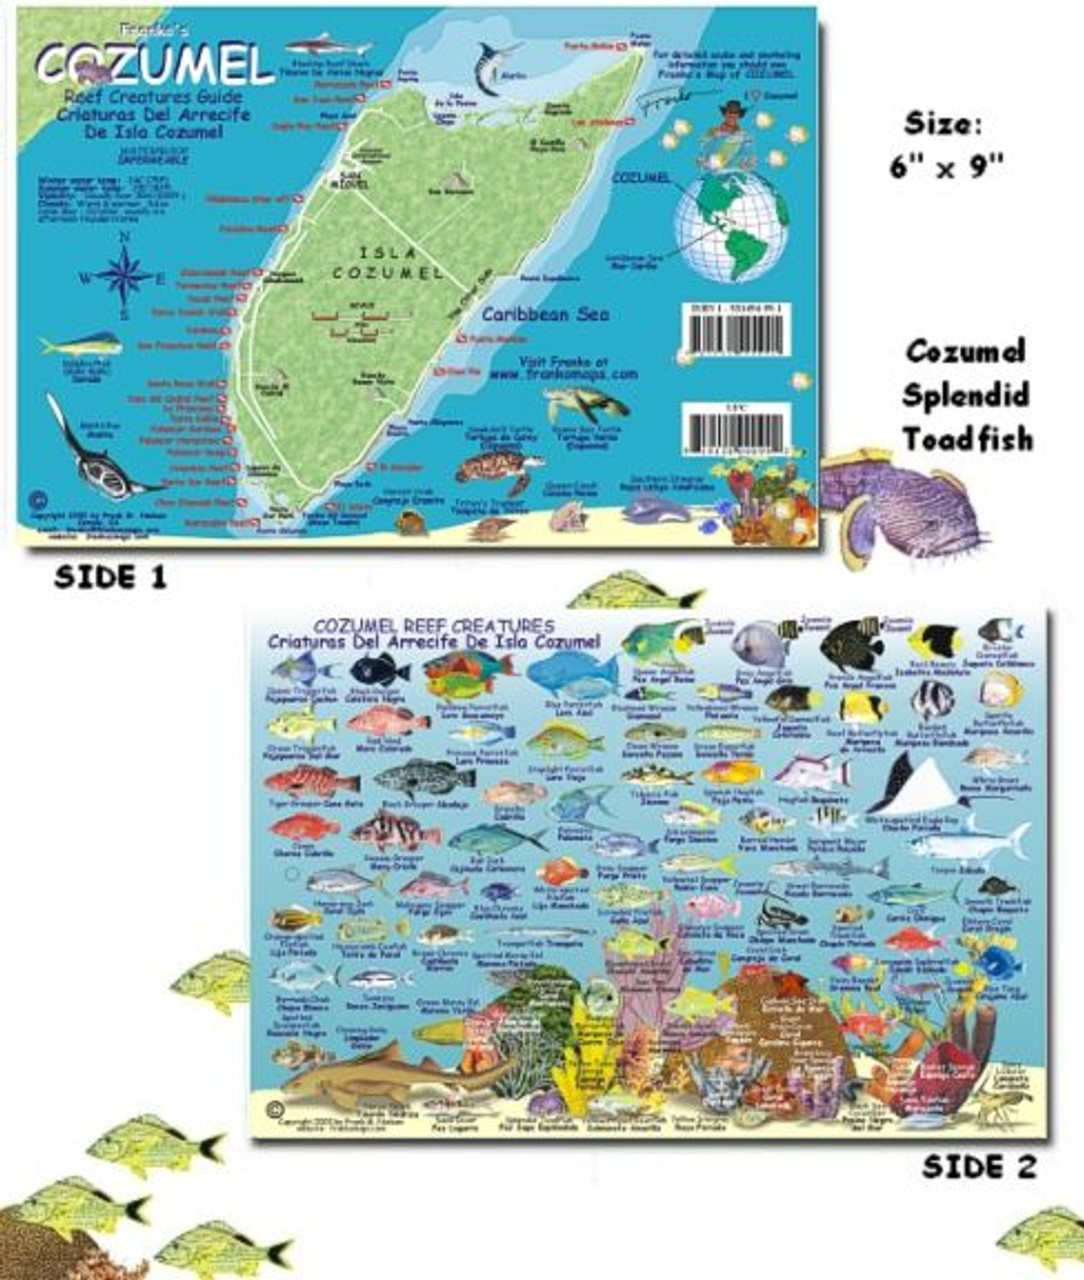 Isla Mujeres, Mexico, Fish Card – Franko Maps